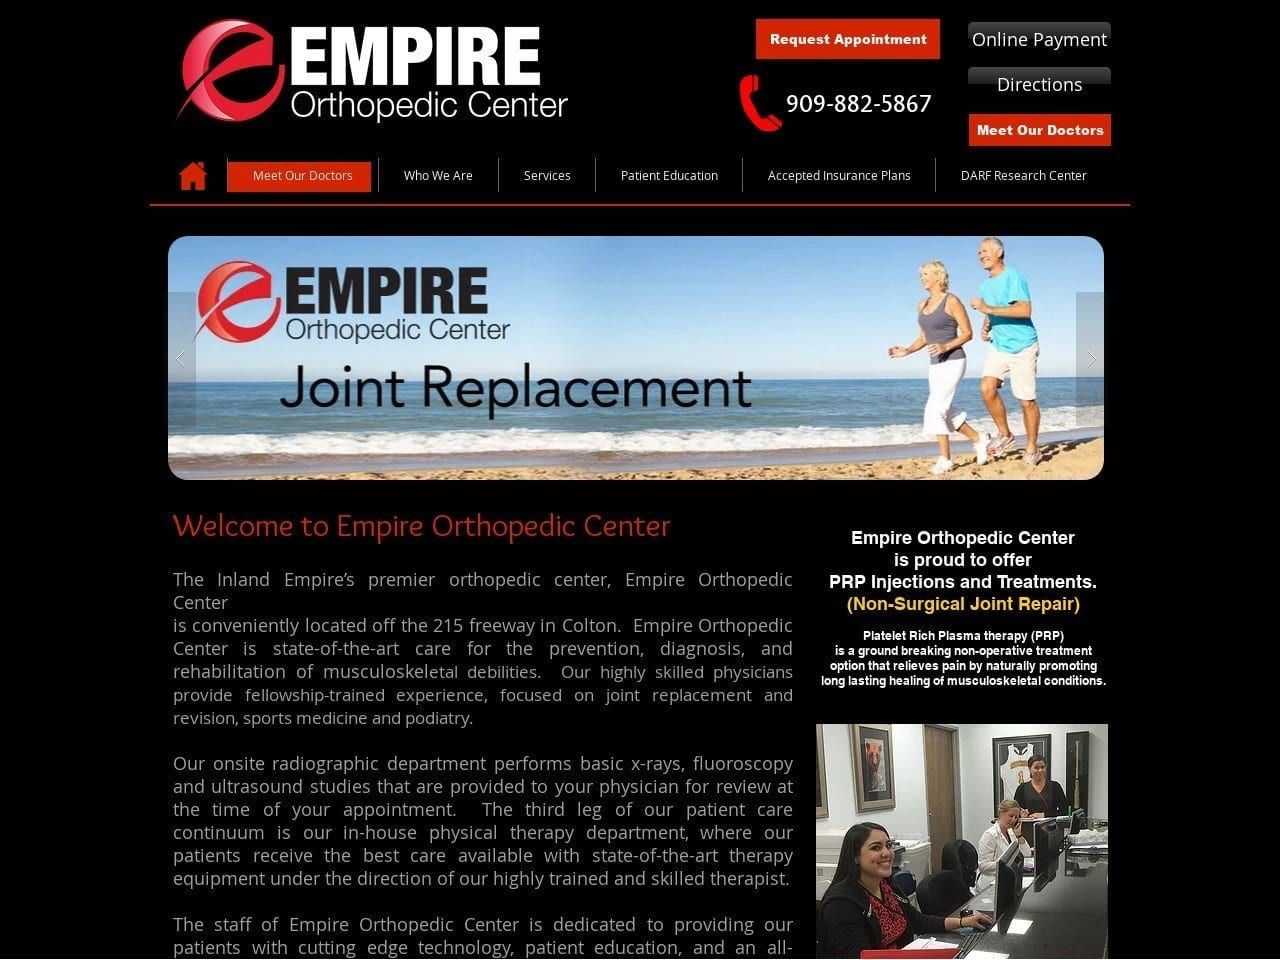 Empire Orthopedic Center Website Screenshot from empireorthopediccenter.net